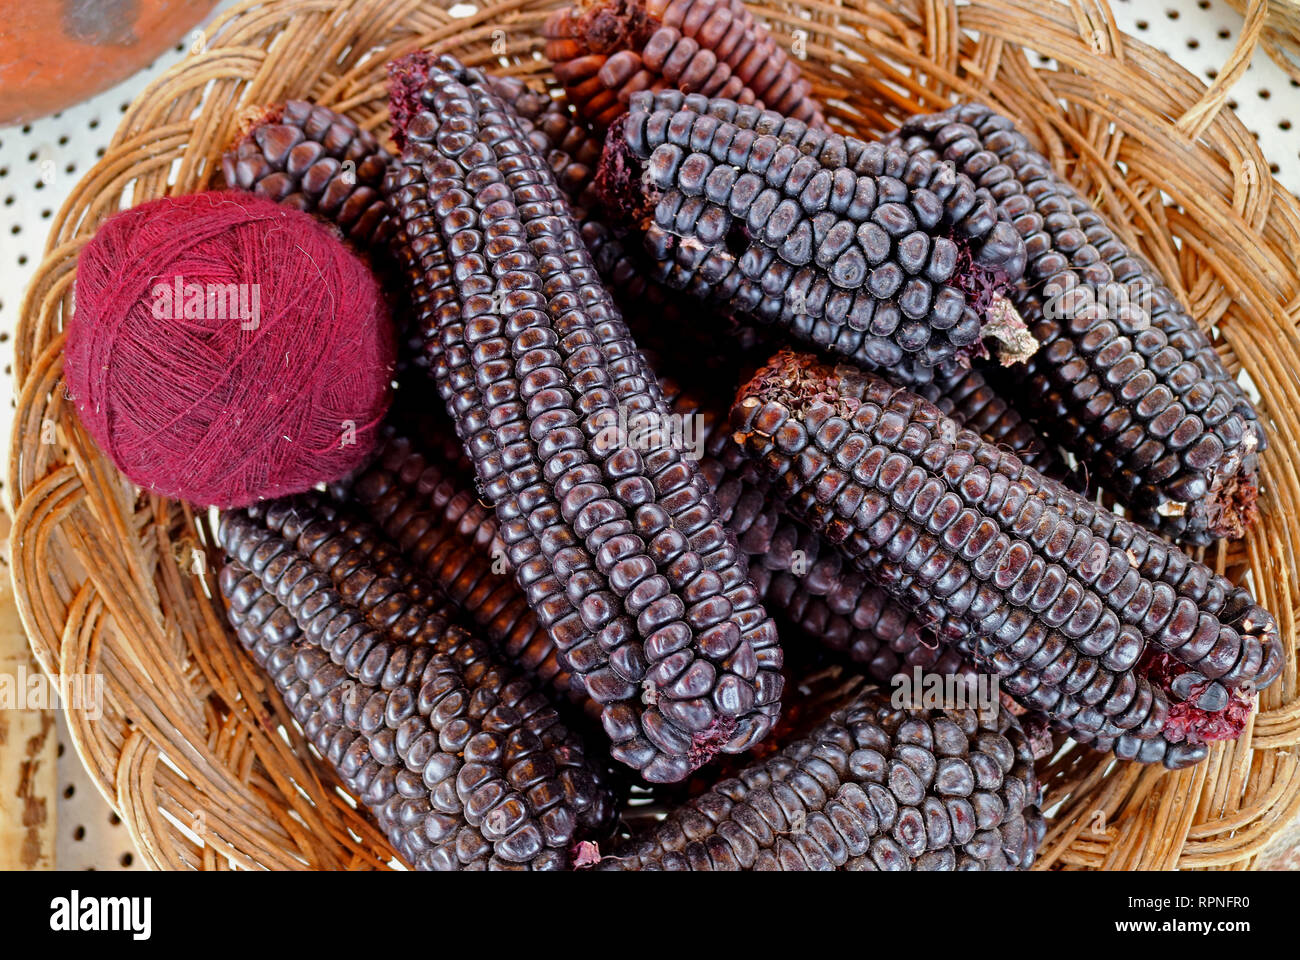 La laine d'Alpaga péruvien violet magenta Boules de fils teints à partir de maïs violet à Chinchero, le village des Andes dans la région de Cuzco au Pérou Banque D'Images